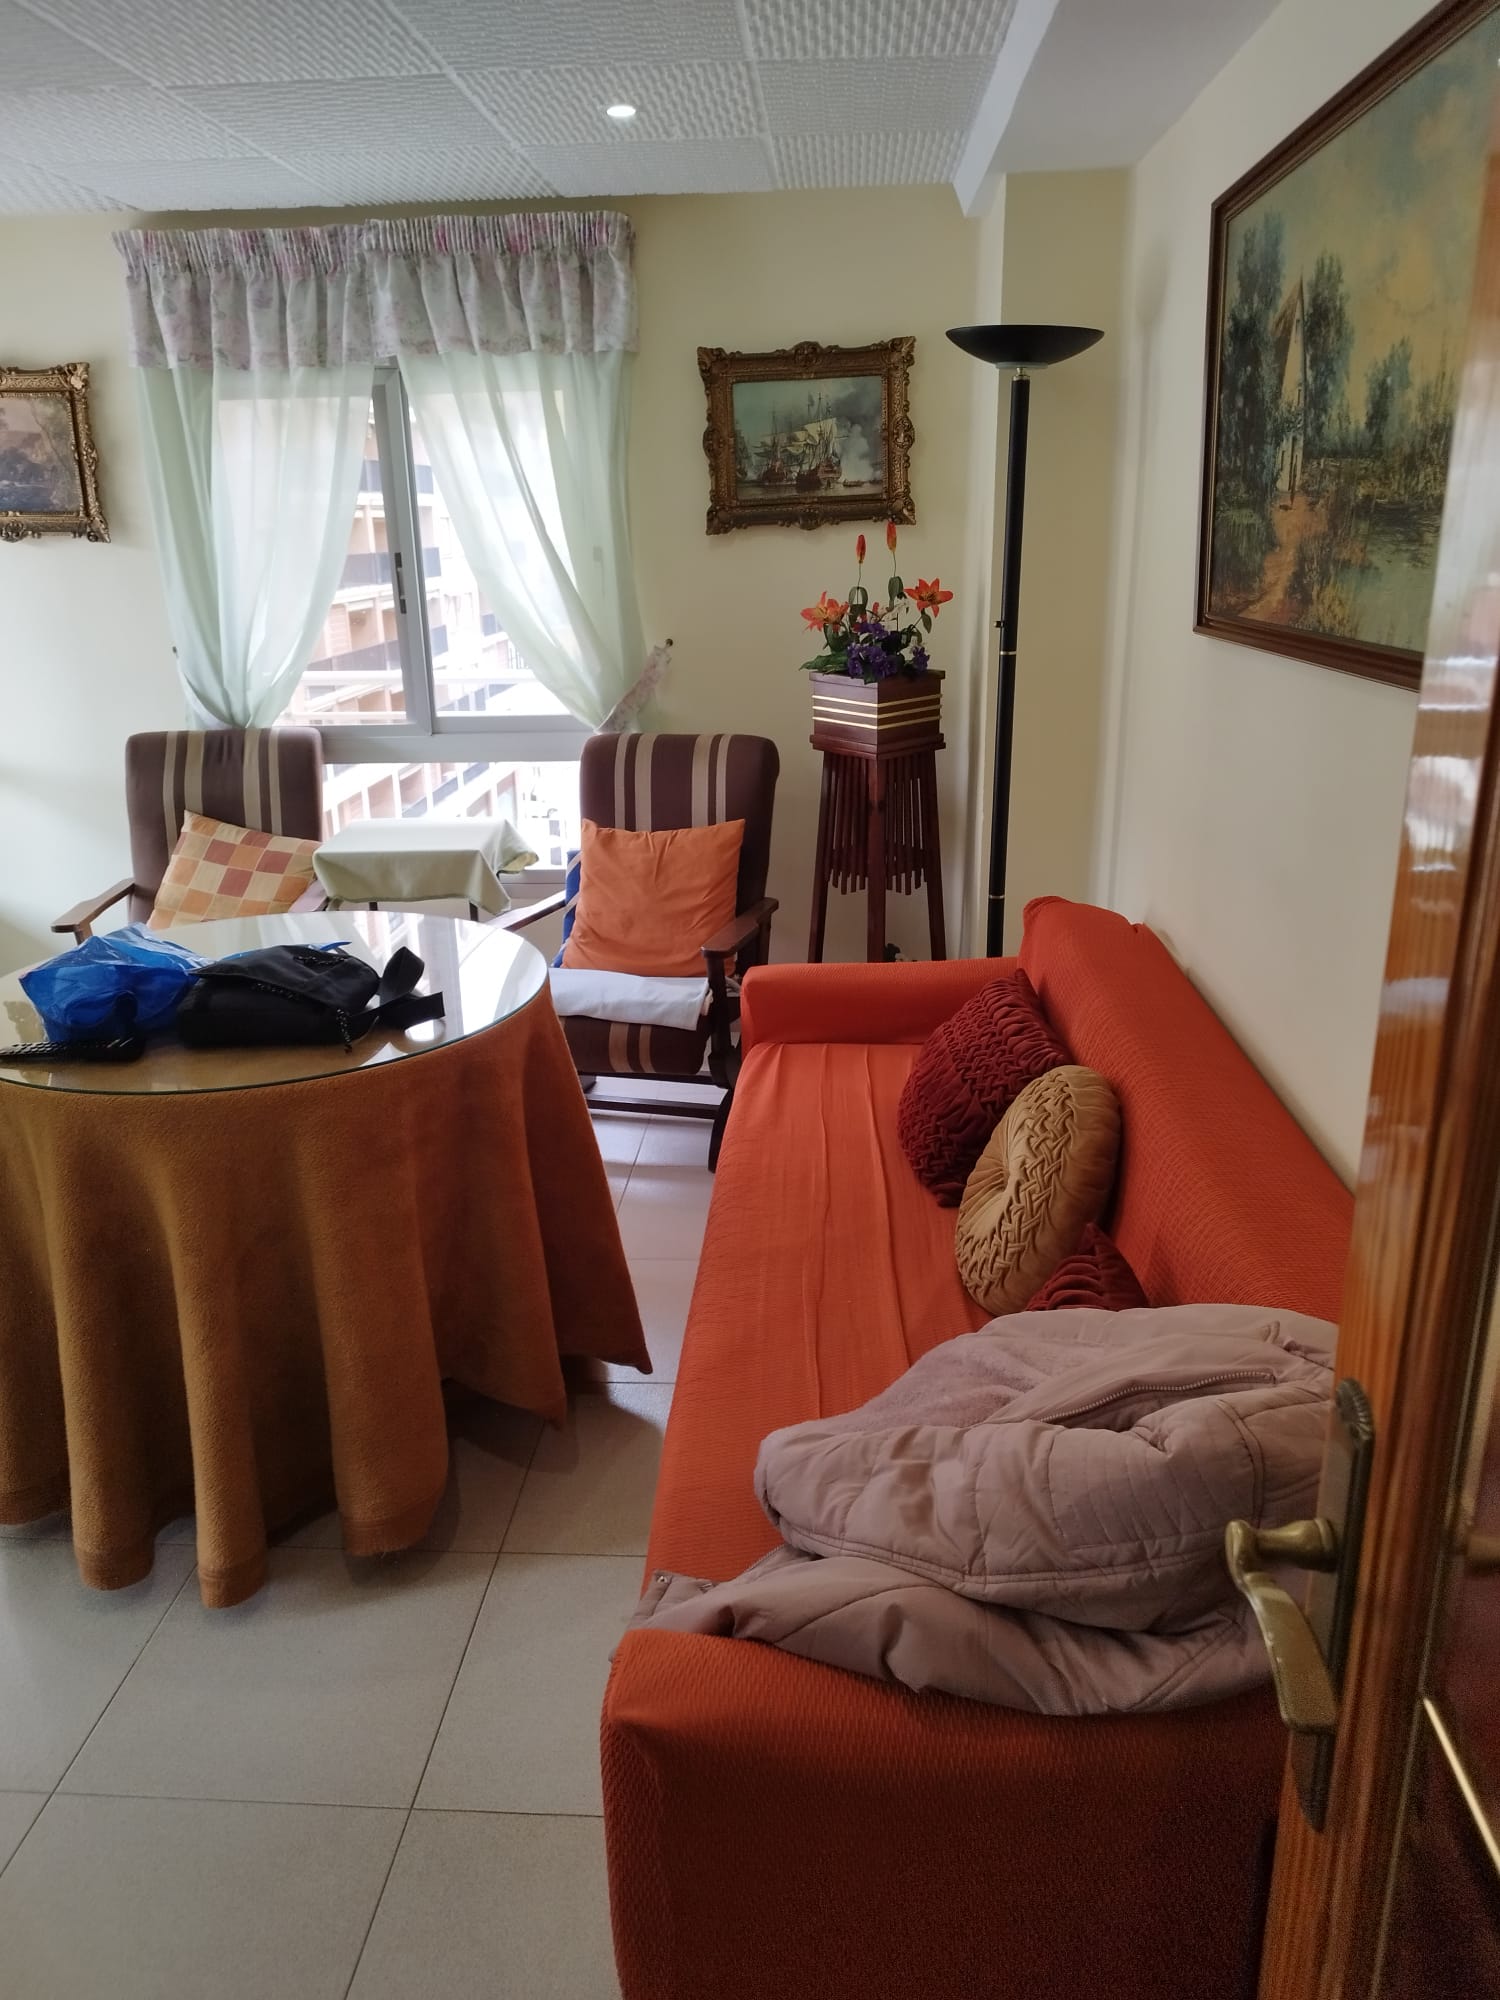 Eliminación de muebles viejos sin complicaciones en Sant Fruitós de Bages